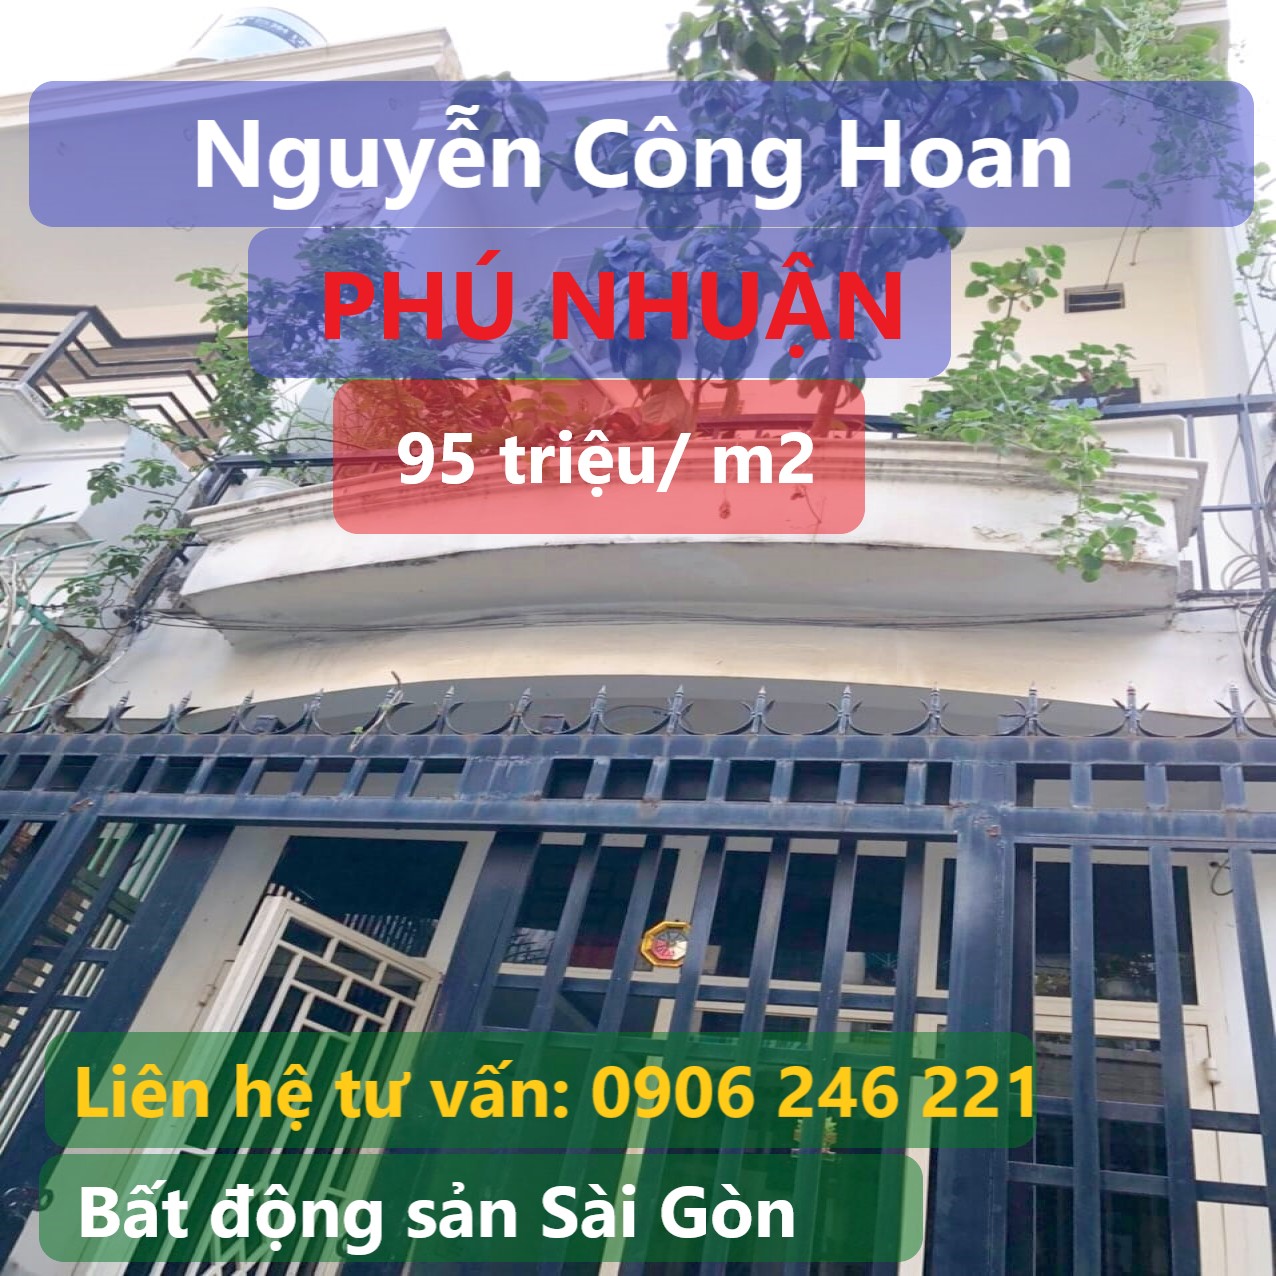 ban-nha-phu-nhuan-phan-xich-long-duong-hoa-nguyen-cong-hoan-gia-re-duoi-5-ty-22050912251